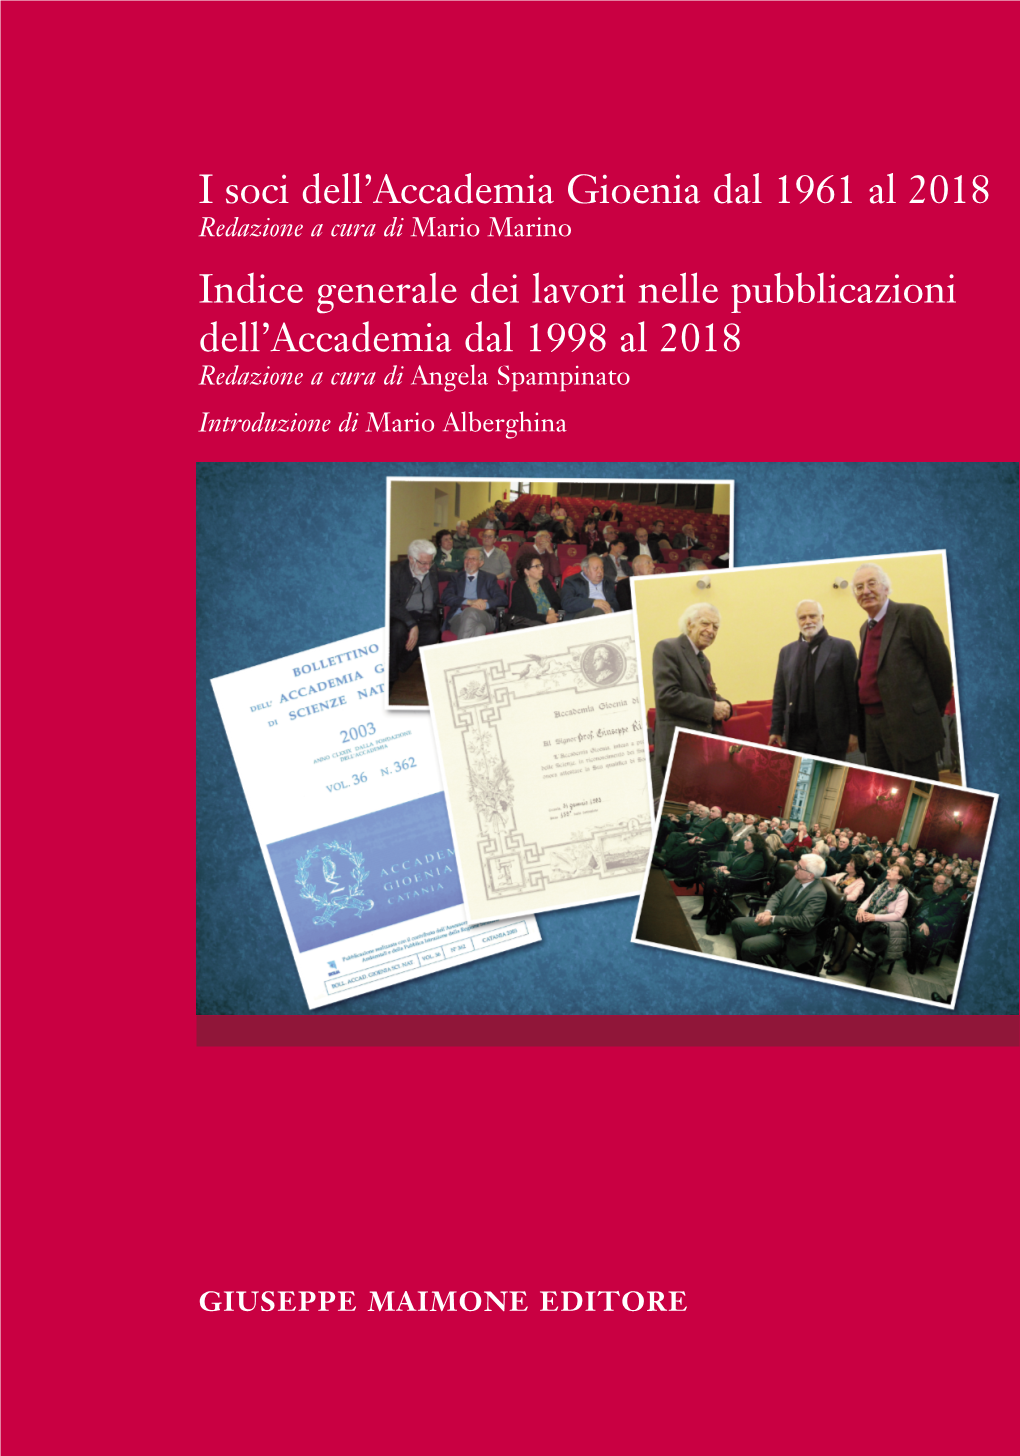 Generale Dei Lavori Nelle Pubblicazioni Dell’Accademia Dal 1998 Al 2018 Redazione a Cura Di Angela Spampinato